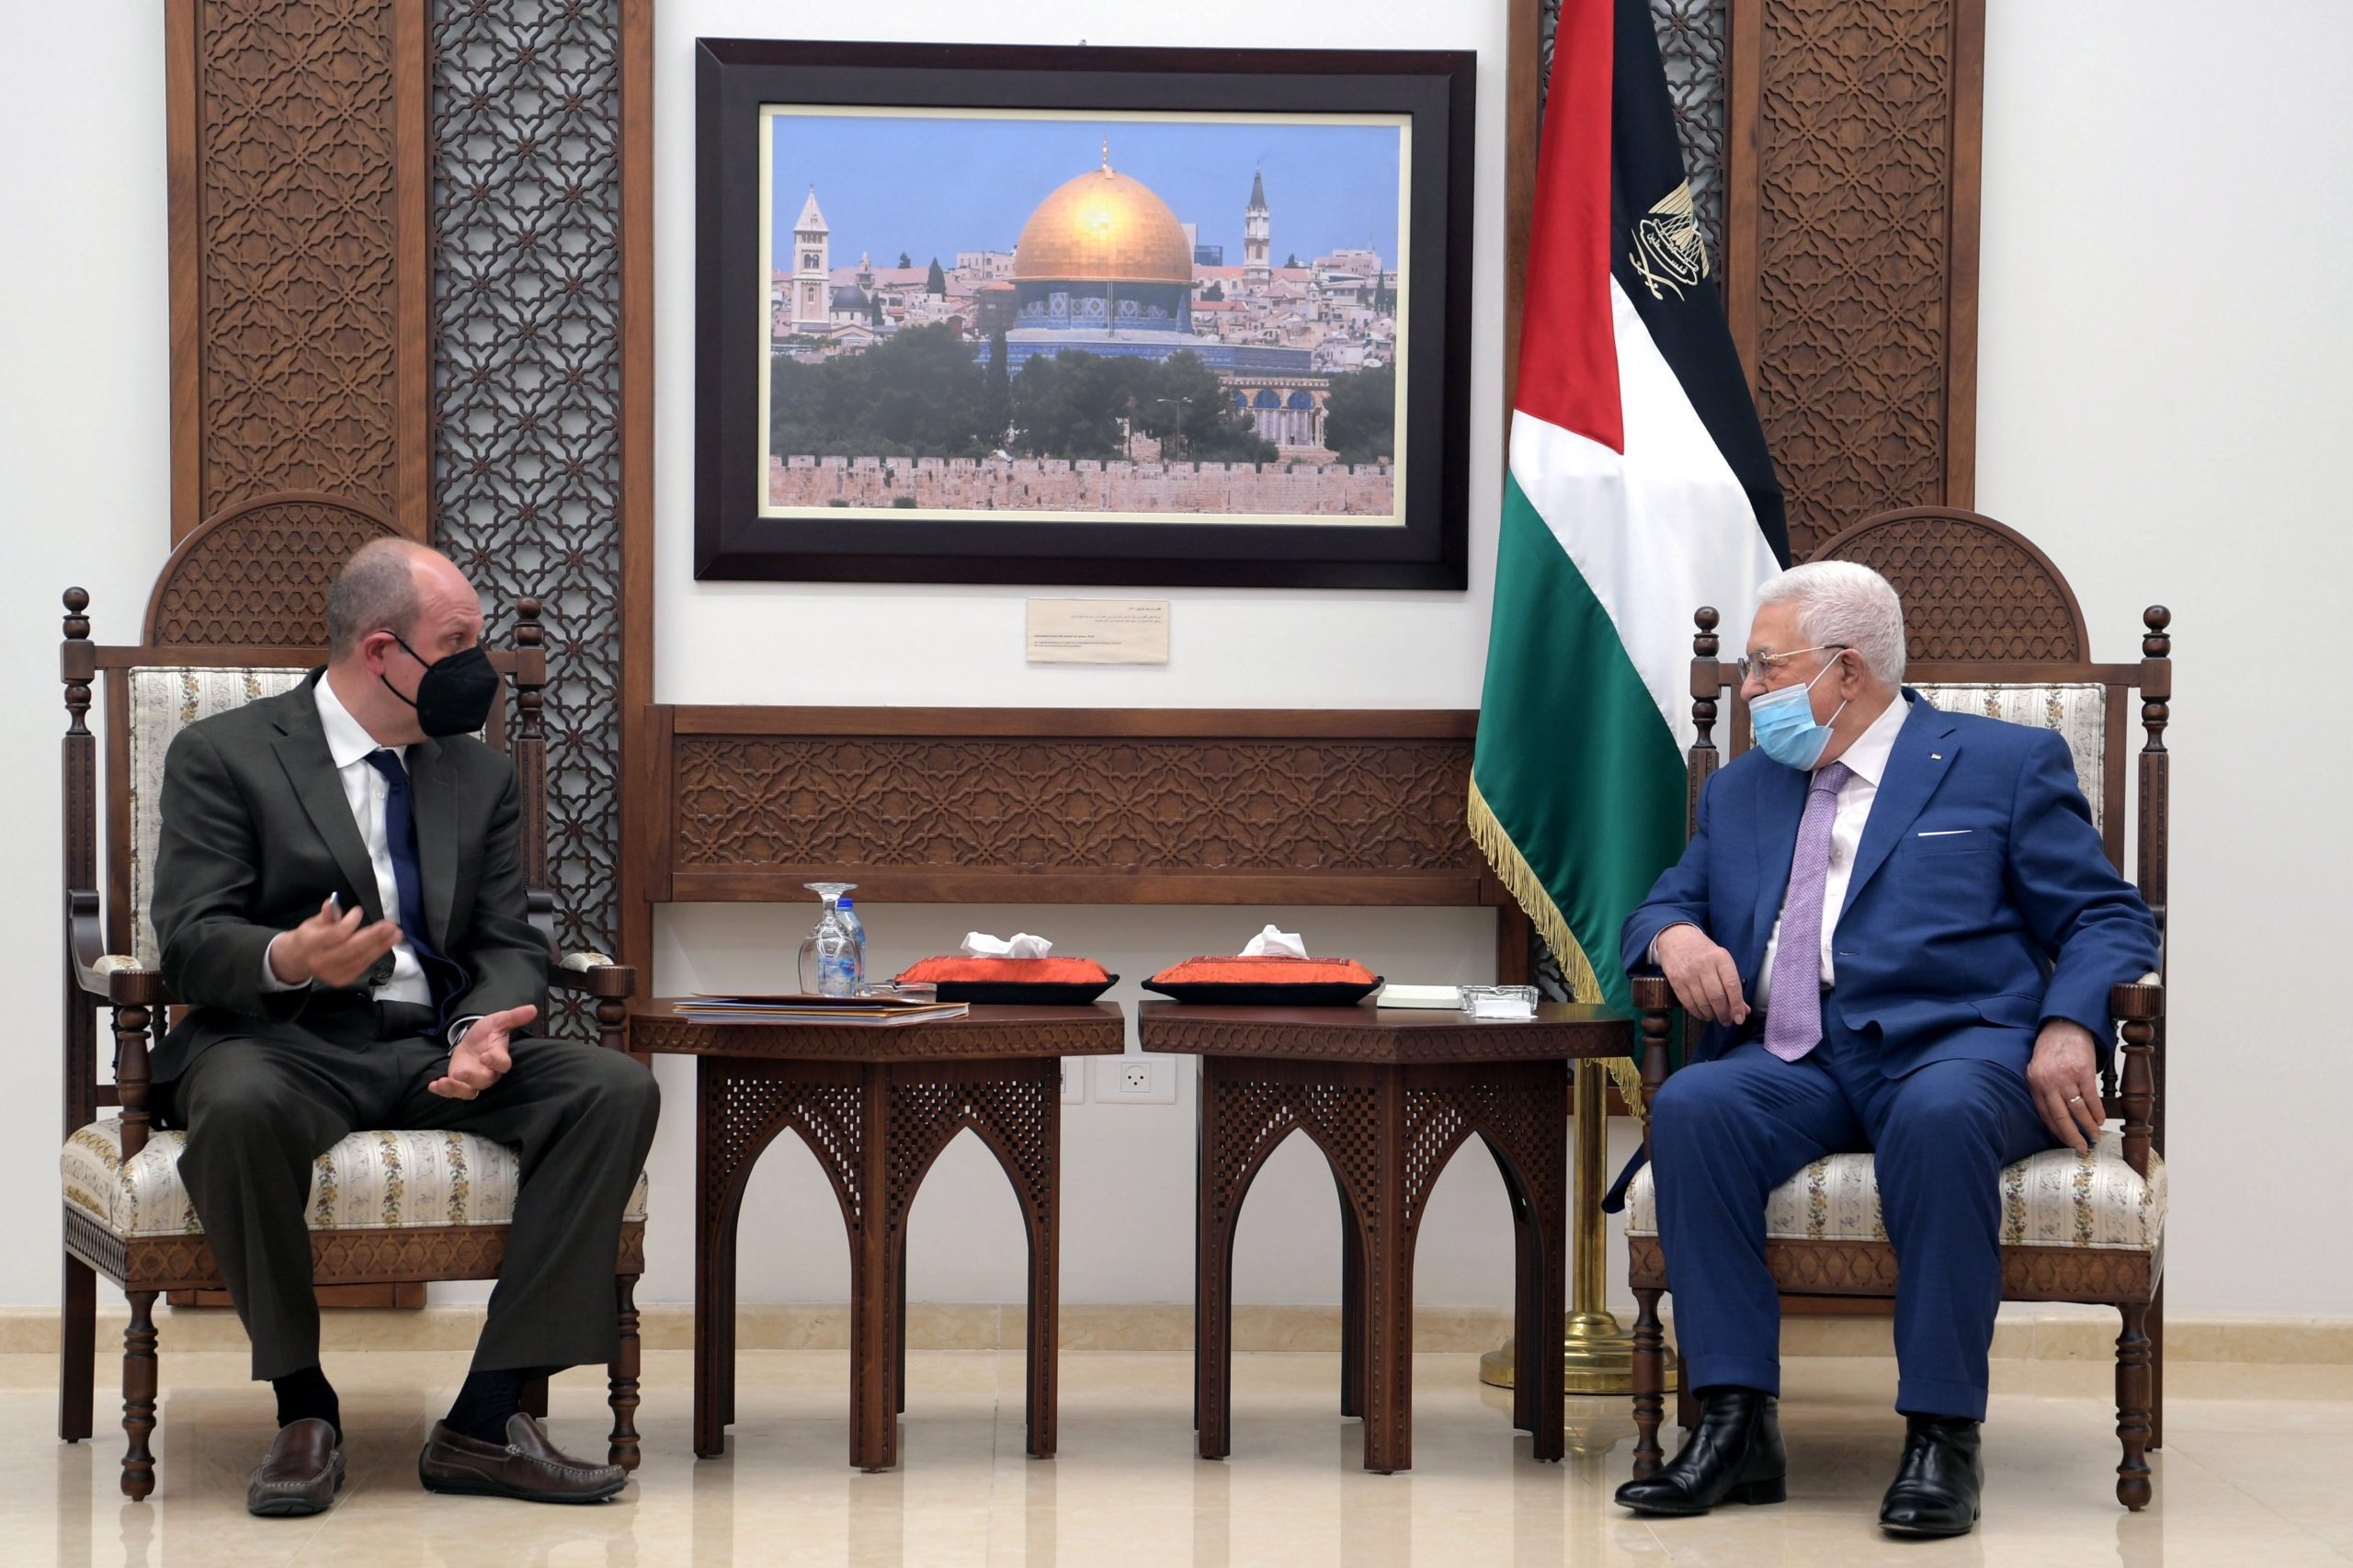 Una fotografía facilitada por la oficina del presidente palestino muestra al presidente palestino Mahmoud Abbas (derecha) reuniéndose con el subsecretario adjunto de los Estados Unidos para Israel y Asuntos Palestinos, Hady Amr, en la ciudad cisjordana de Ramallah, el 17 de mayo de 2021. Foto: EFE